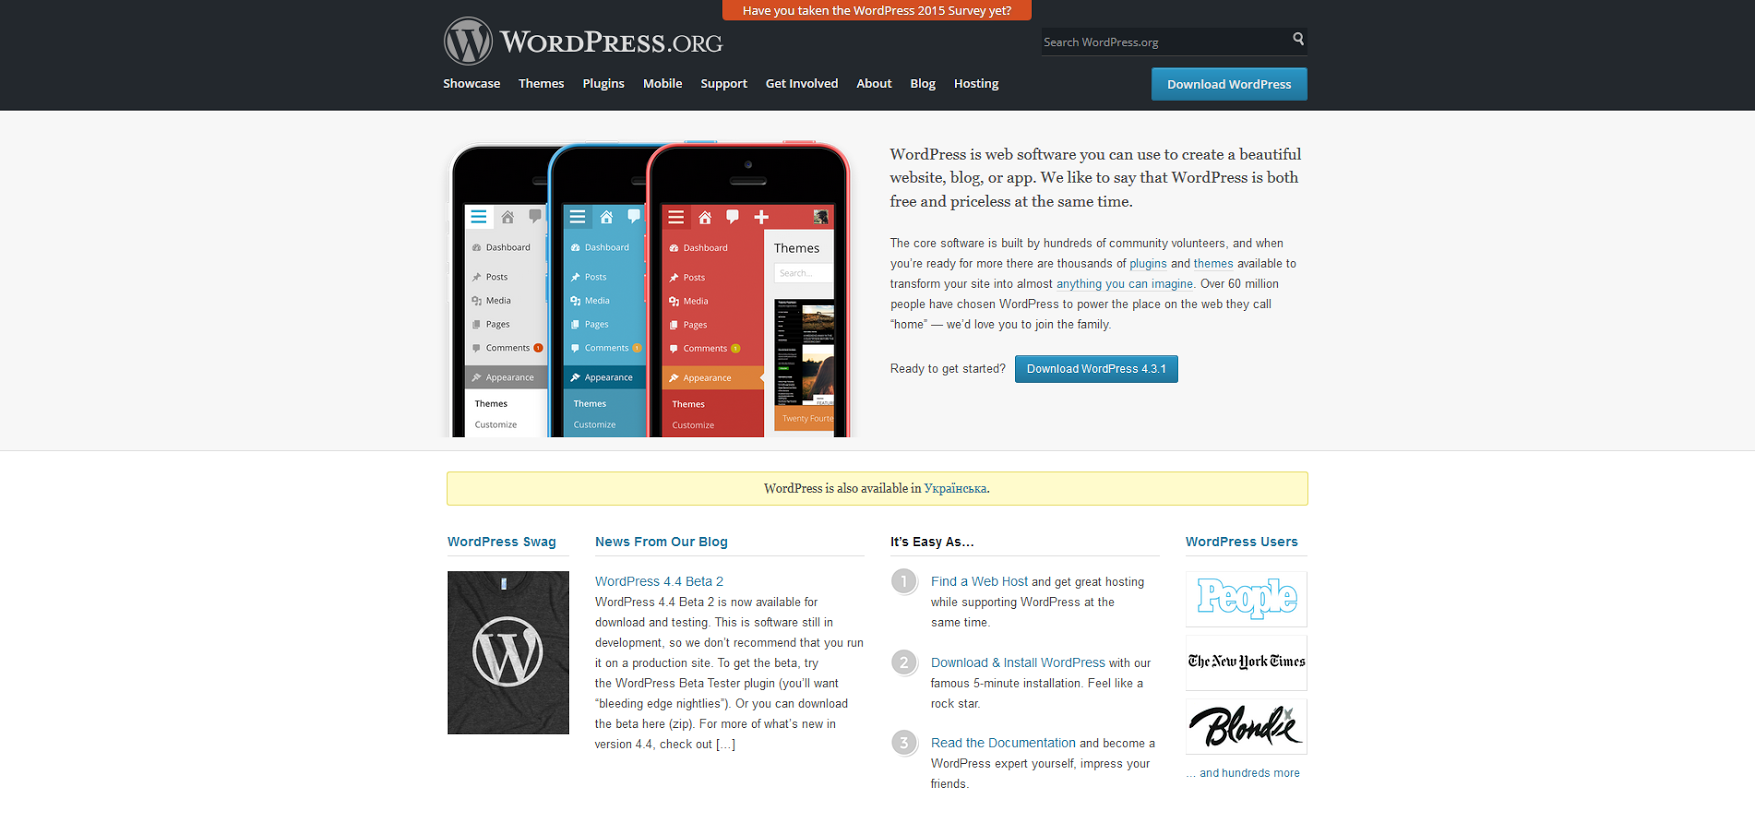 The WordPress.org home screen